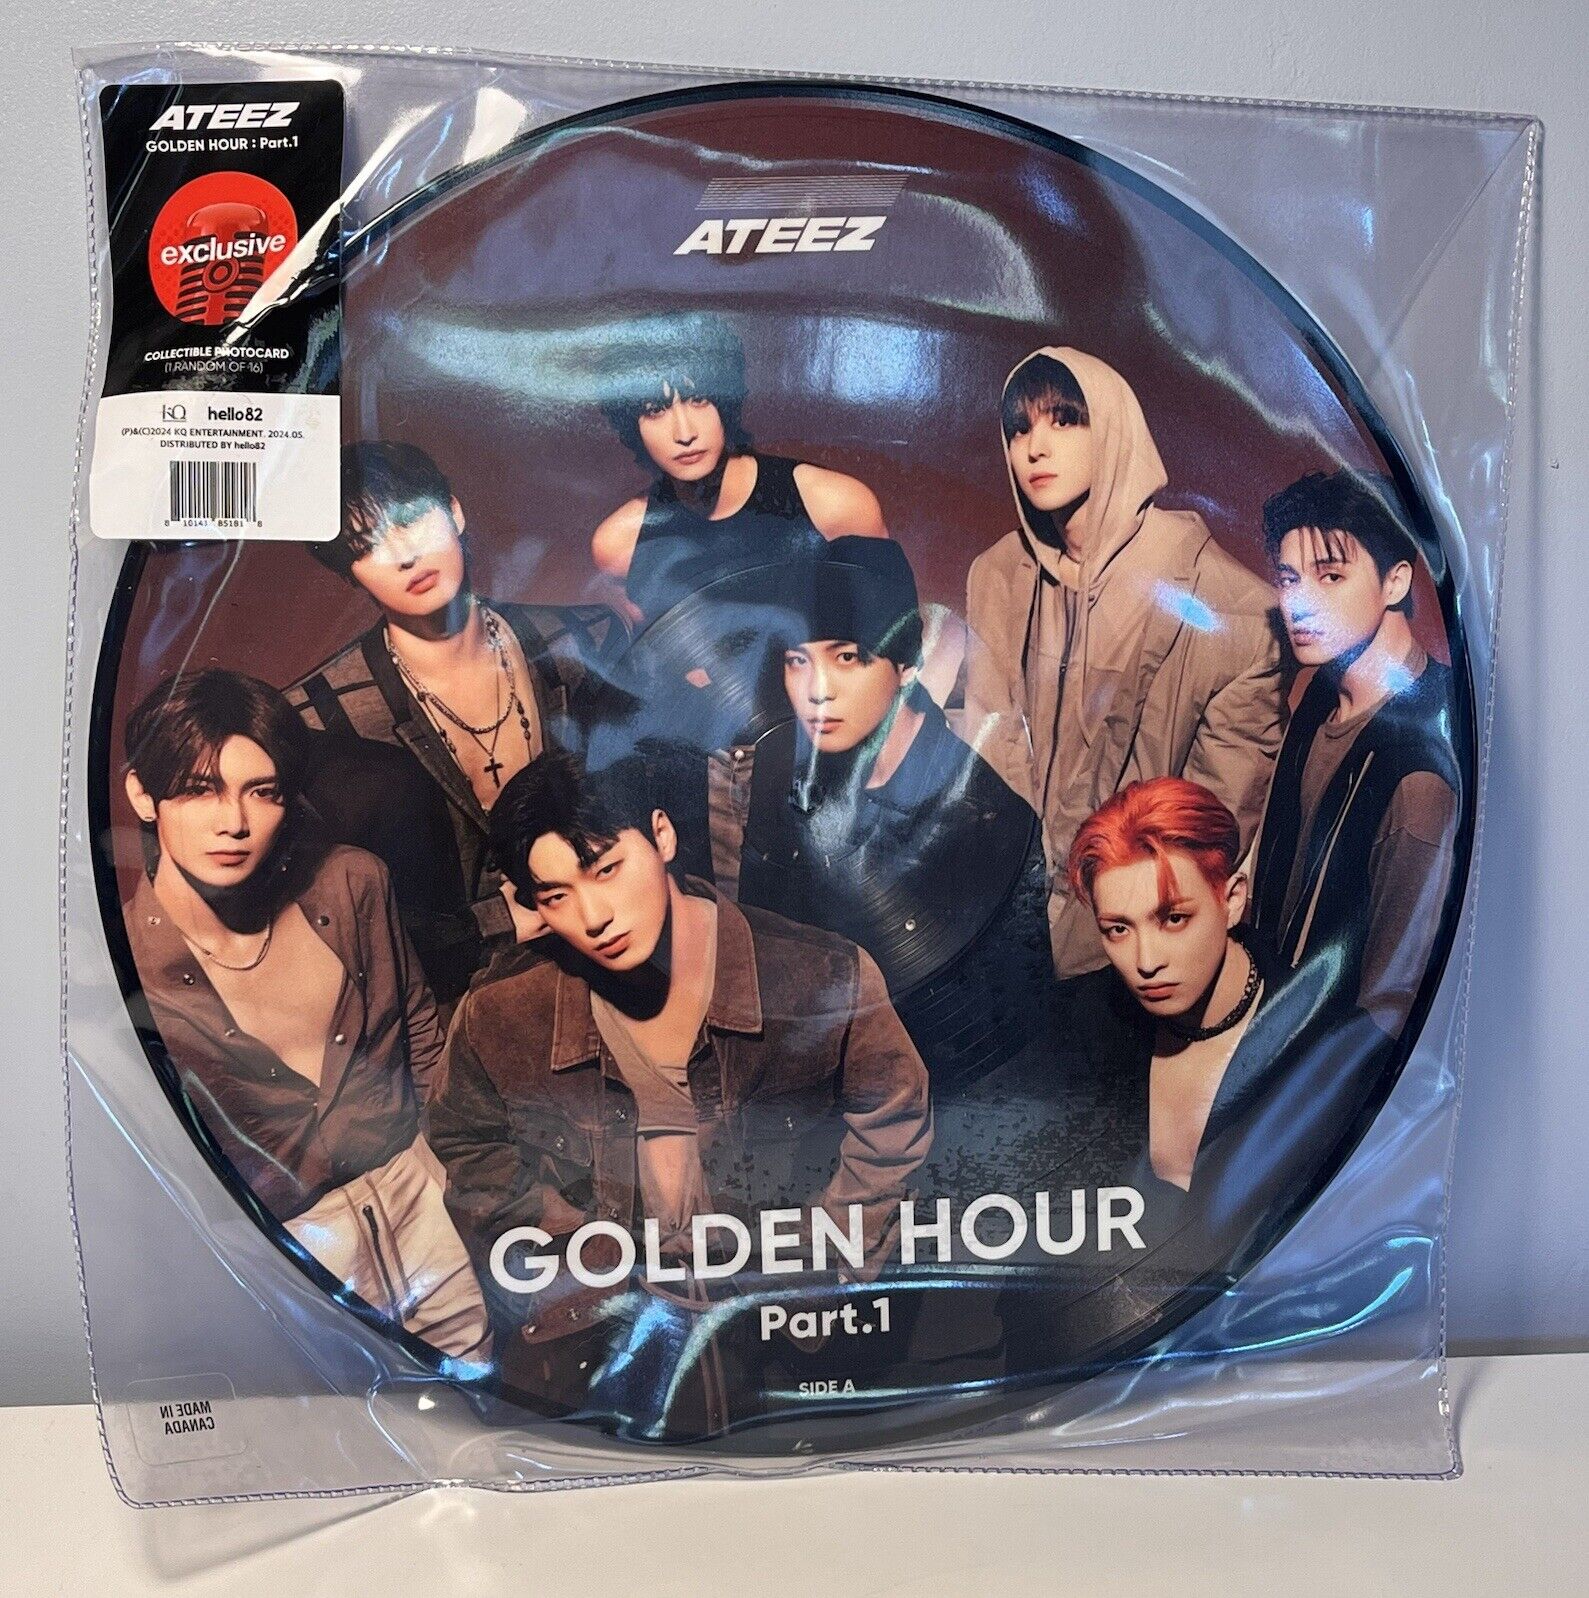 NEW ATEEZ Golden Hour Target Limited Exclusive KPOP Vinyl - FAST, 